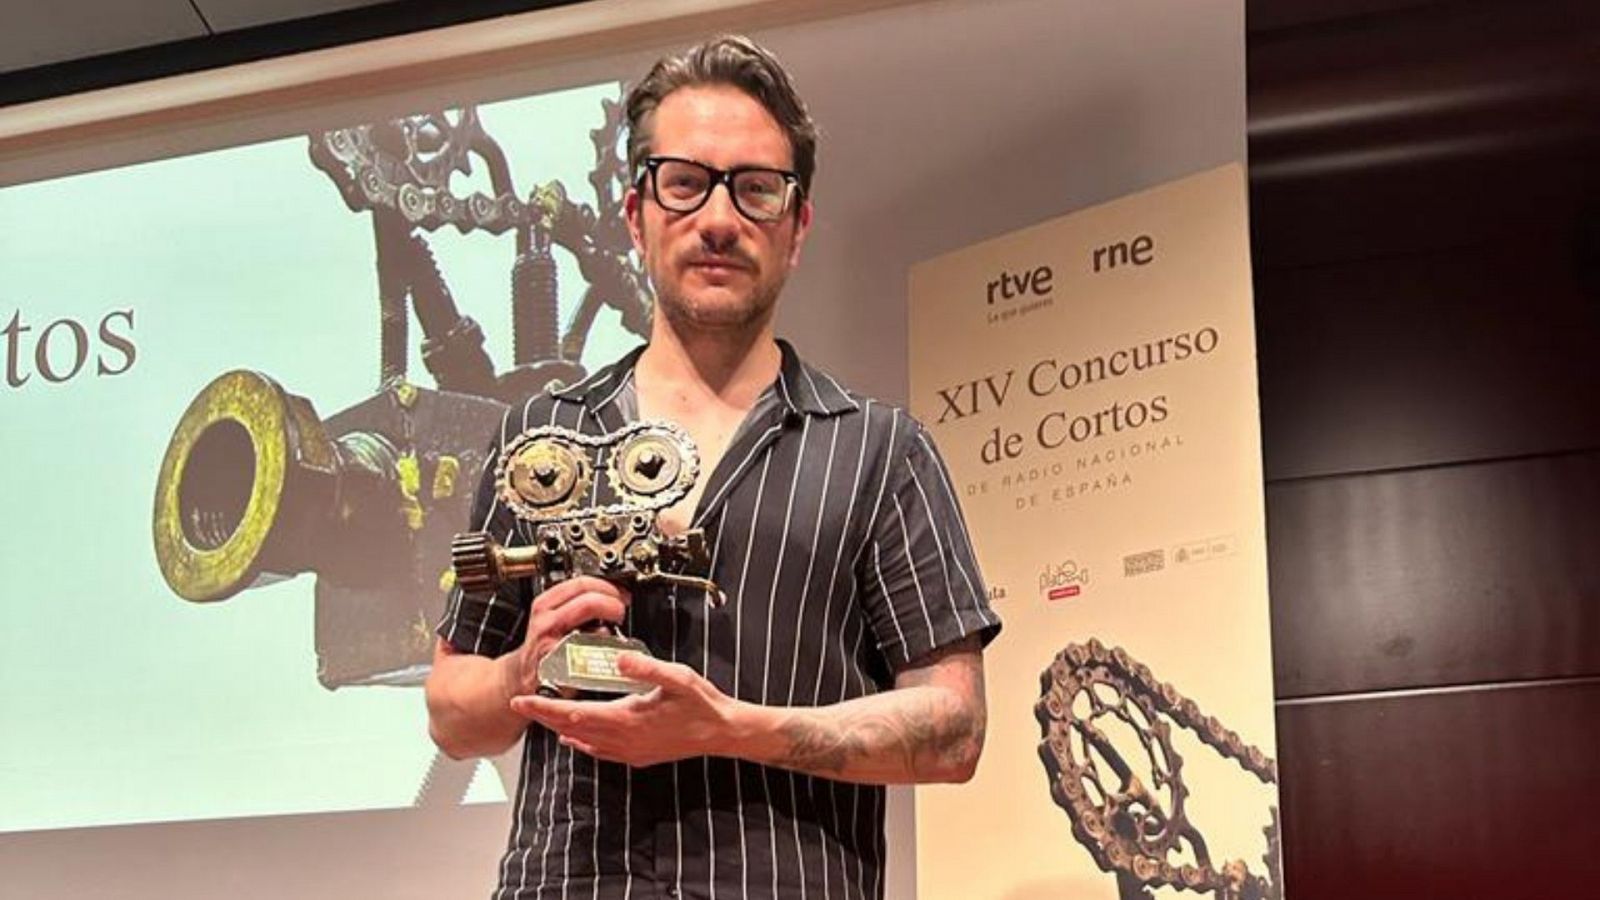 El corto de Fernando Tato gana el XIV Concurso de Cortos RNE Platino Crowdfunding